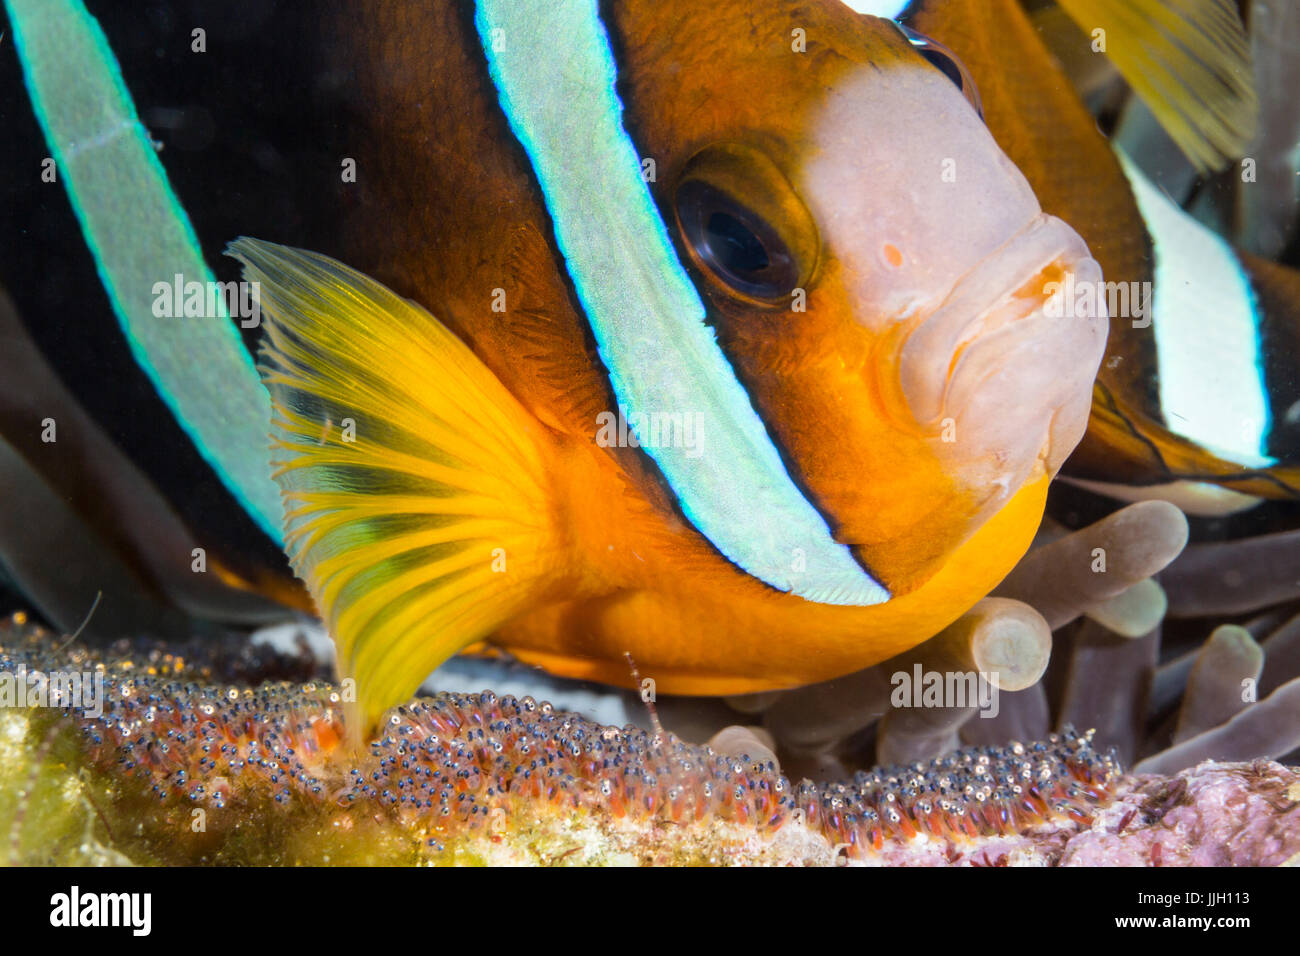 Un poisson clown composés oxygénés en déplaçant ses œufs dans l'eau puis avec une nageoire pectorale. Photographié dans Anilao, Philippines. Banque D'Images